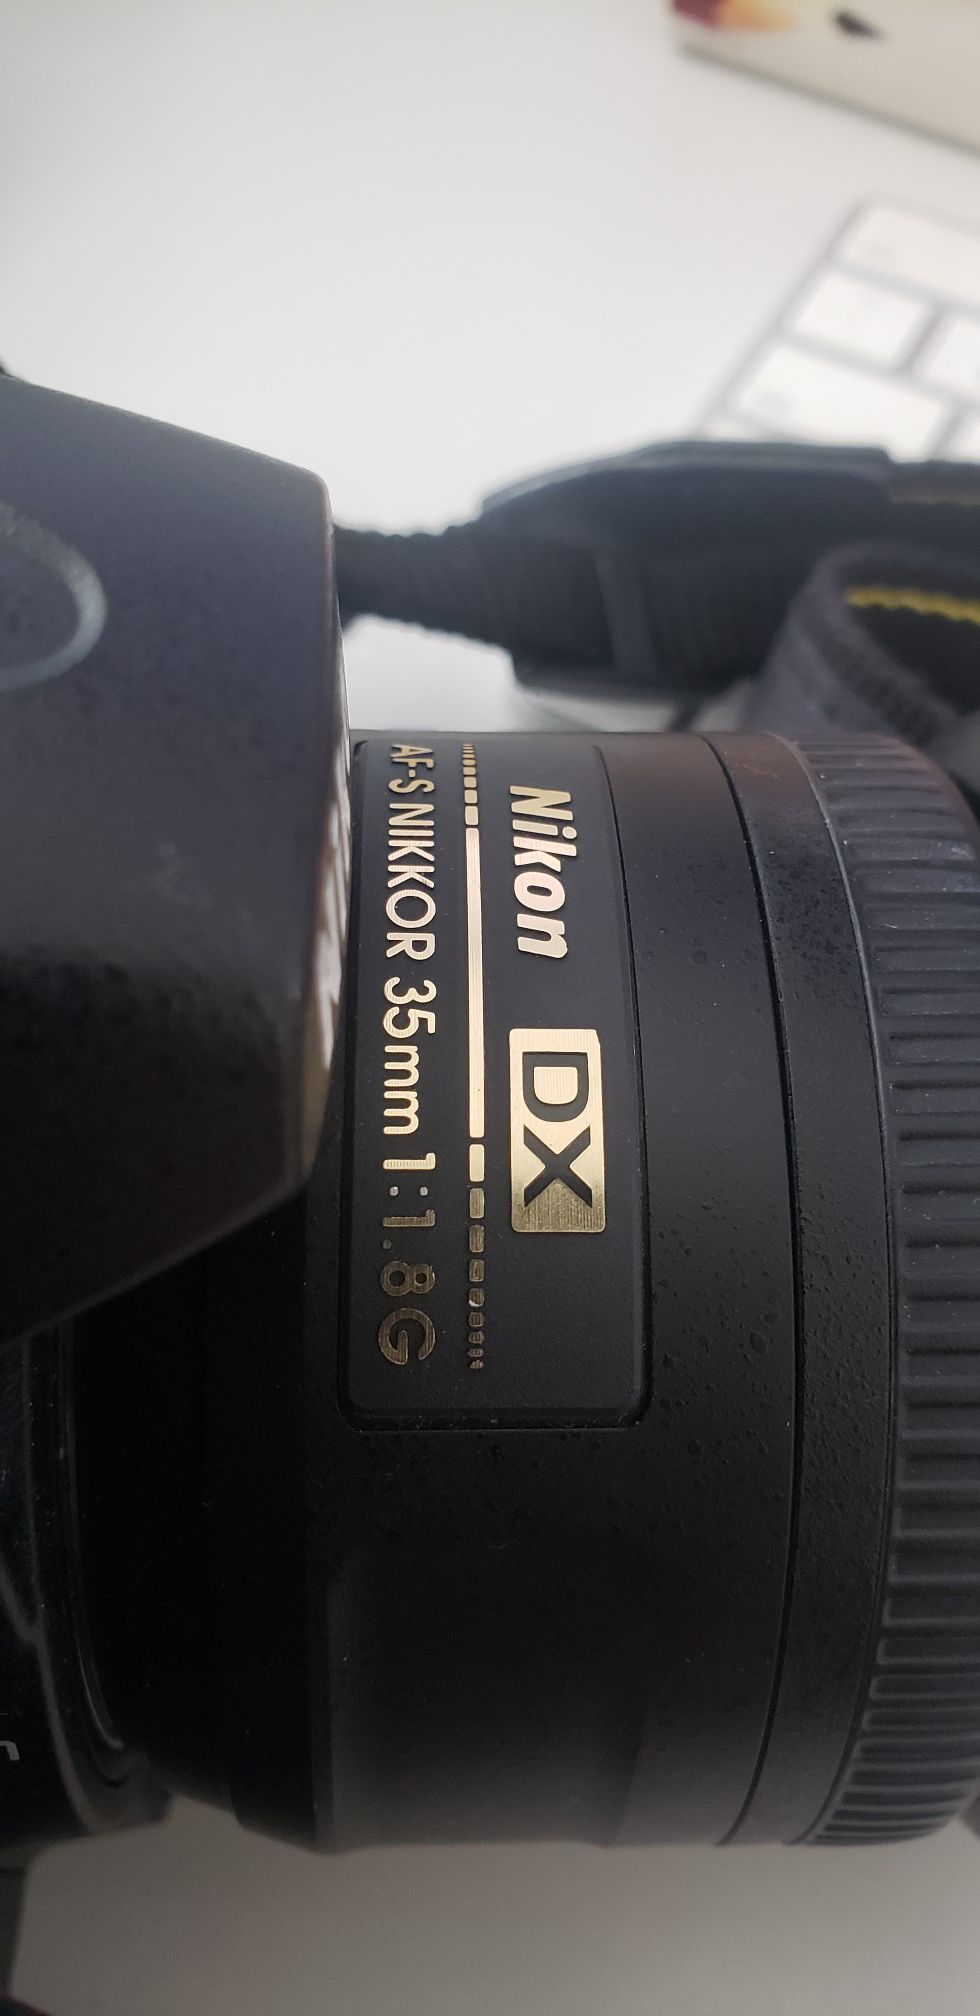 Nikon D7000 + 35mm 1.8 Nikkor lenses + Evecase